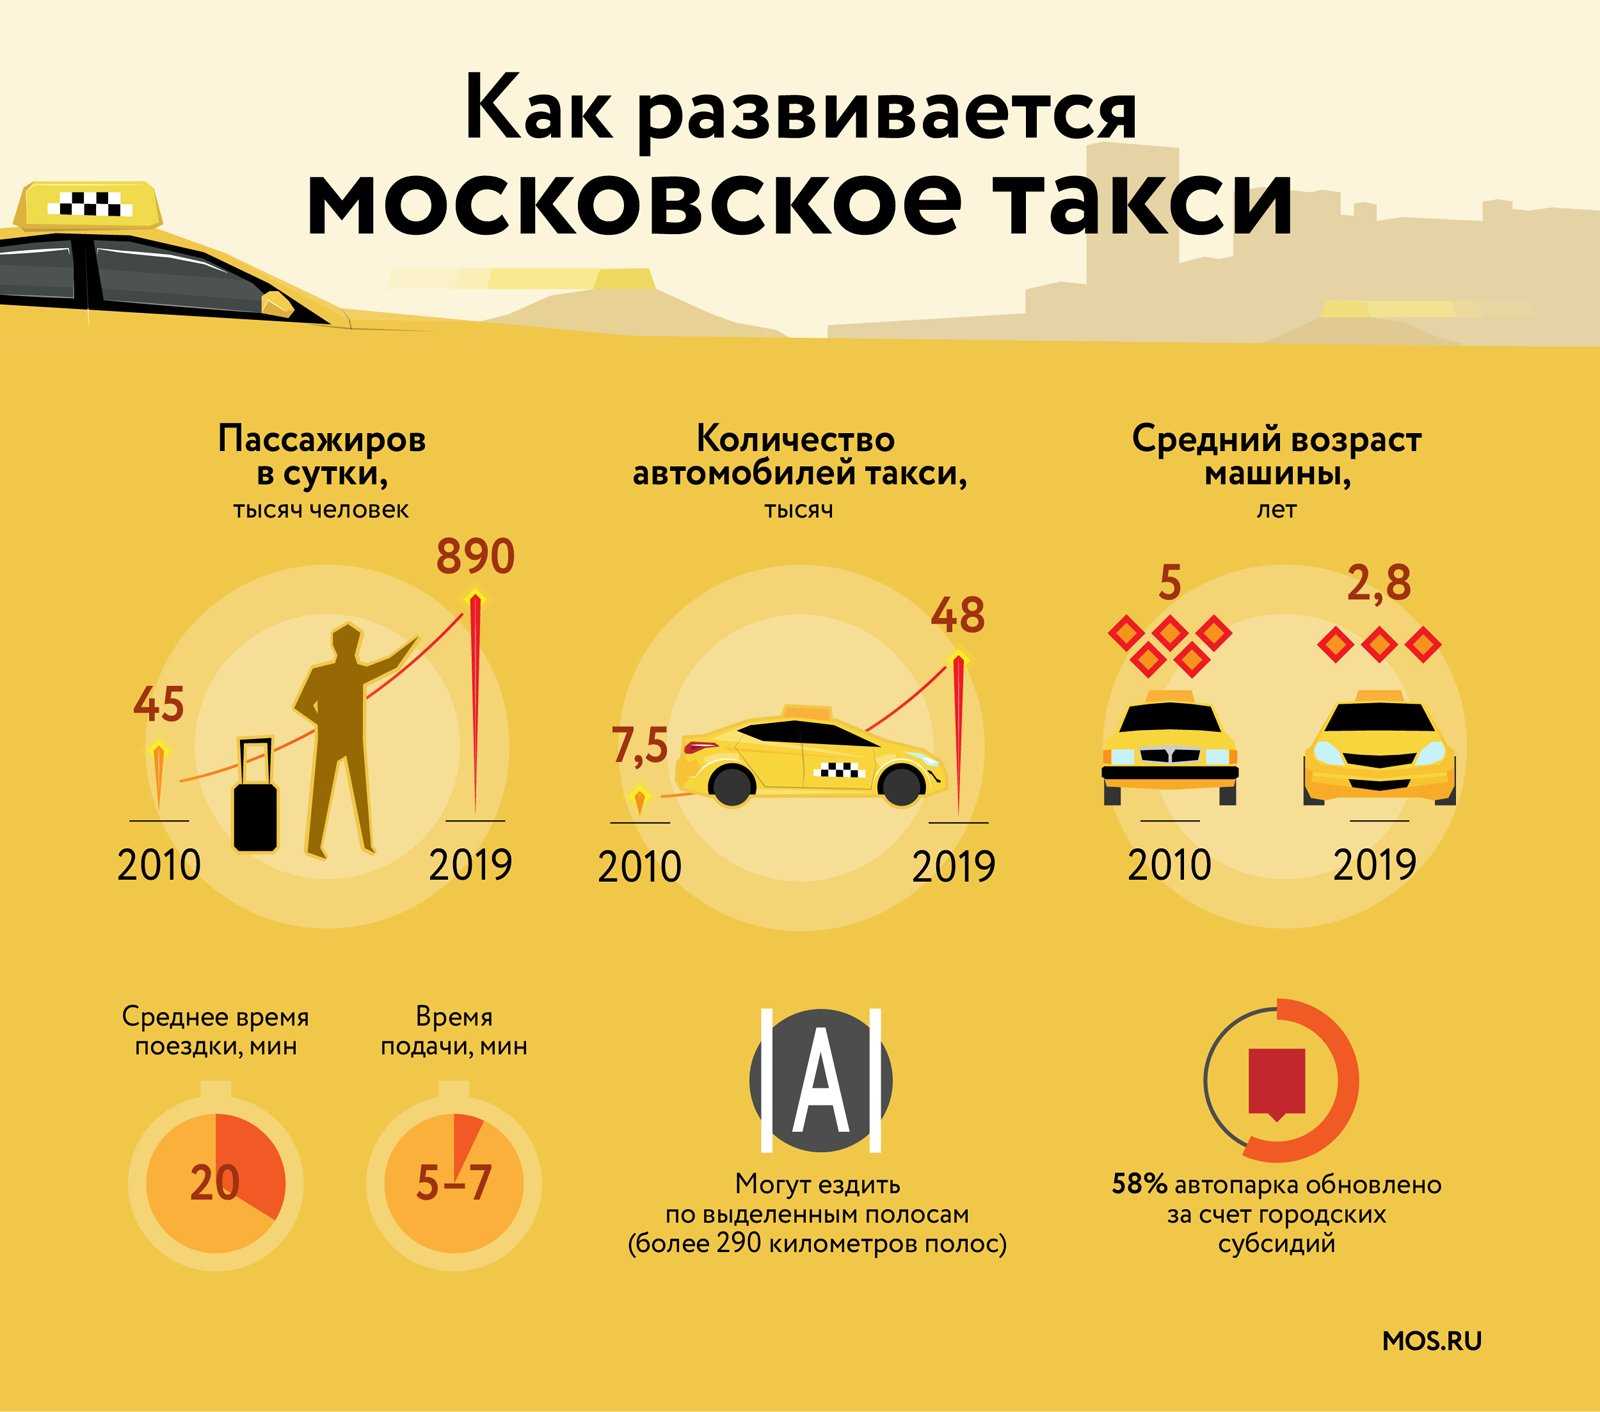 Сколько пассажиров в такси. Статистика такси. Рынок такси в России. Количество таксистов в Москве. Такси в России статистика.